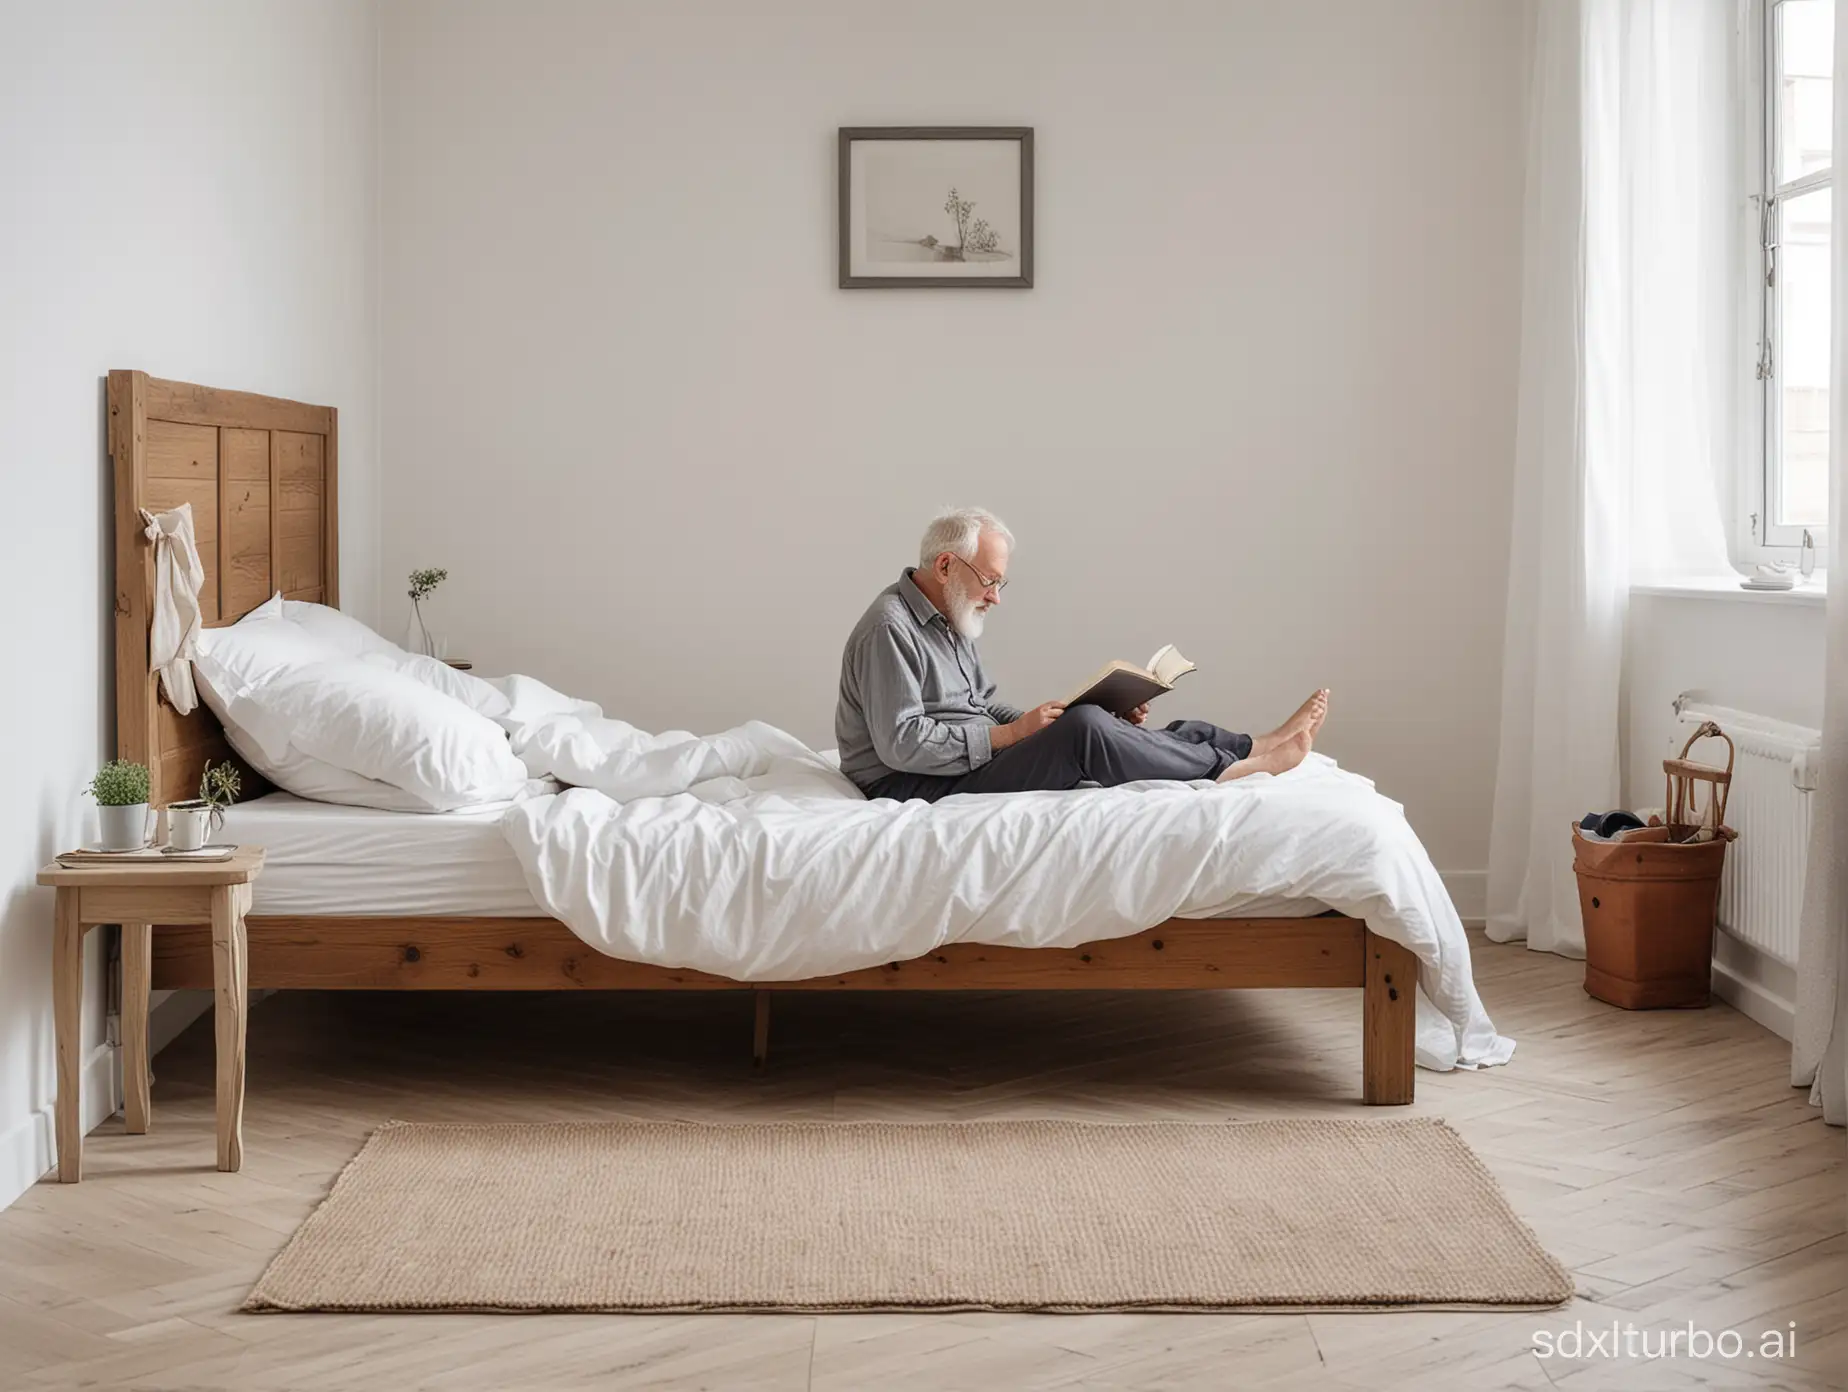  侧边视角，北欧明亮的卧室里，高一点点的床，老人半躺在床上看书，露出床和地面